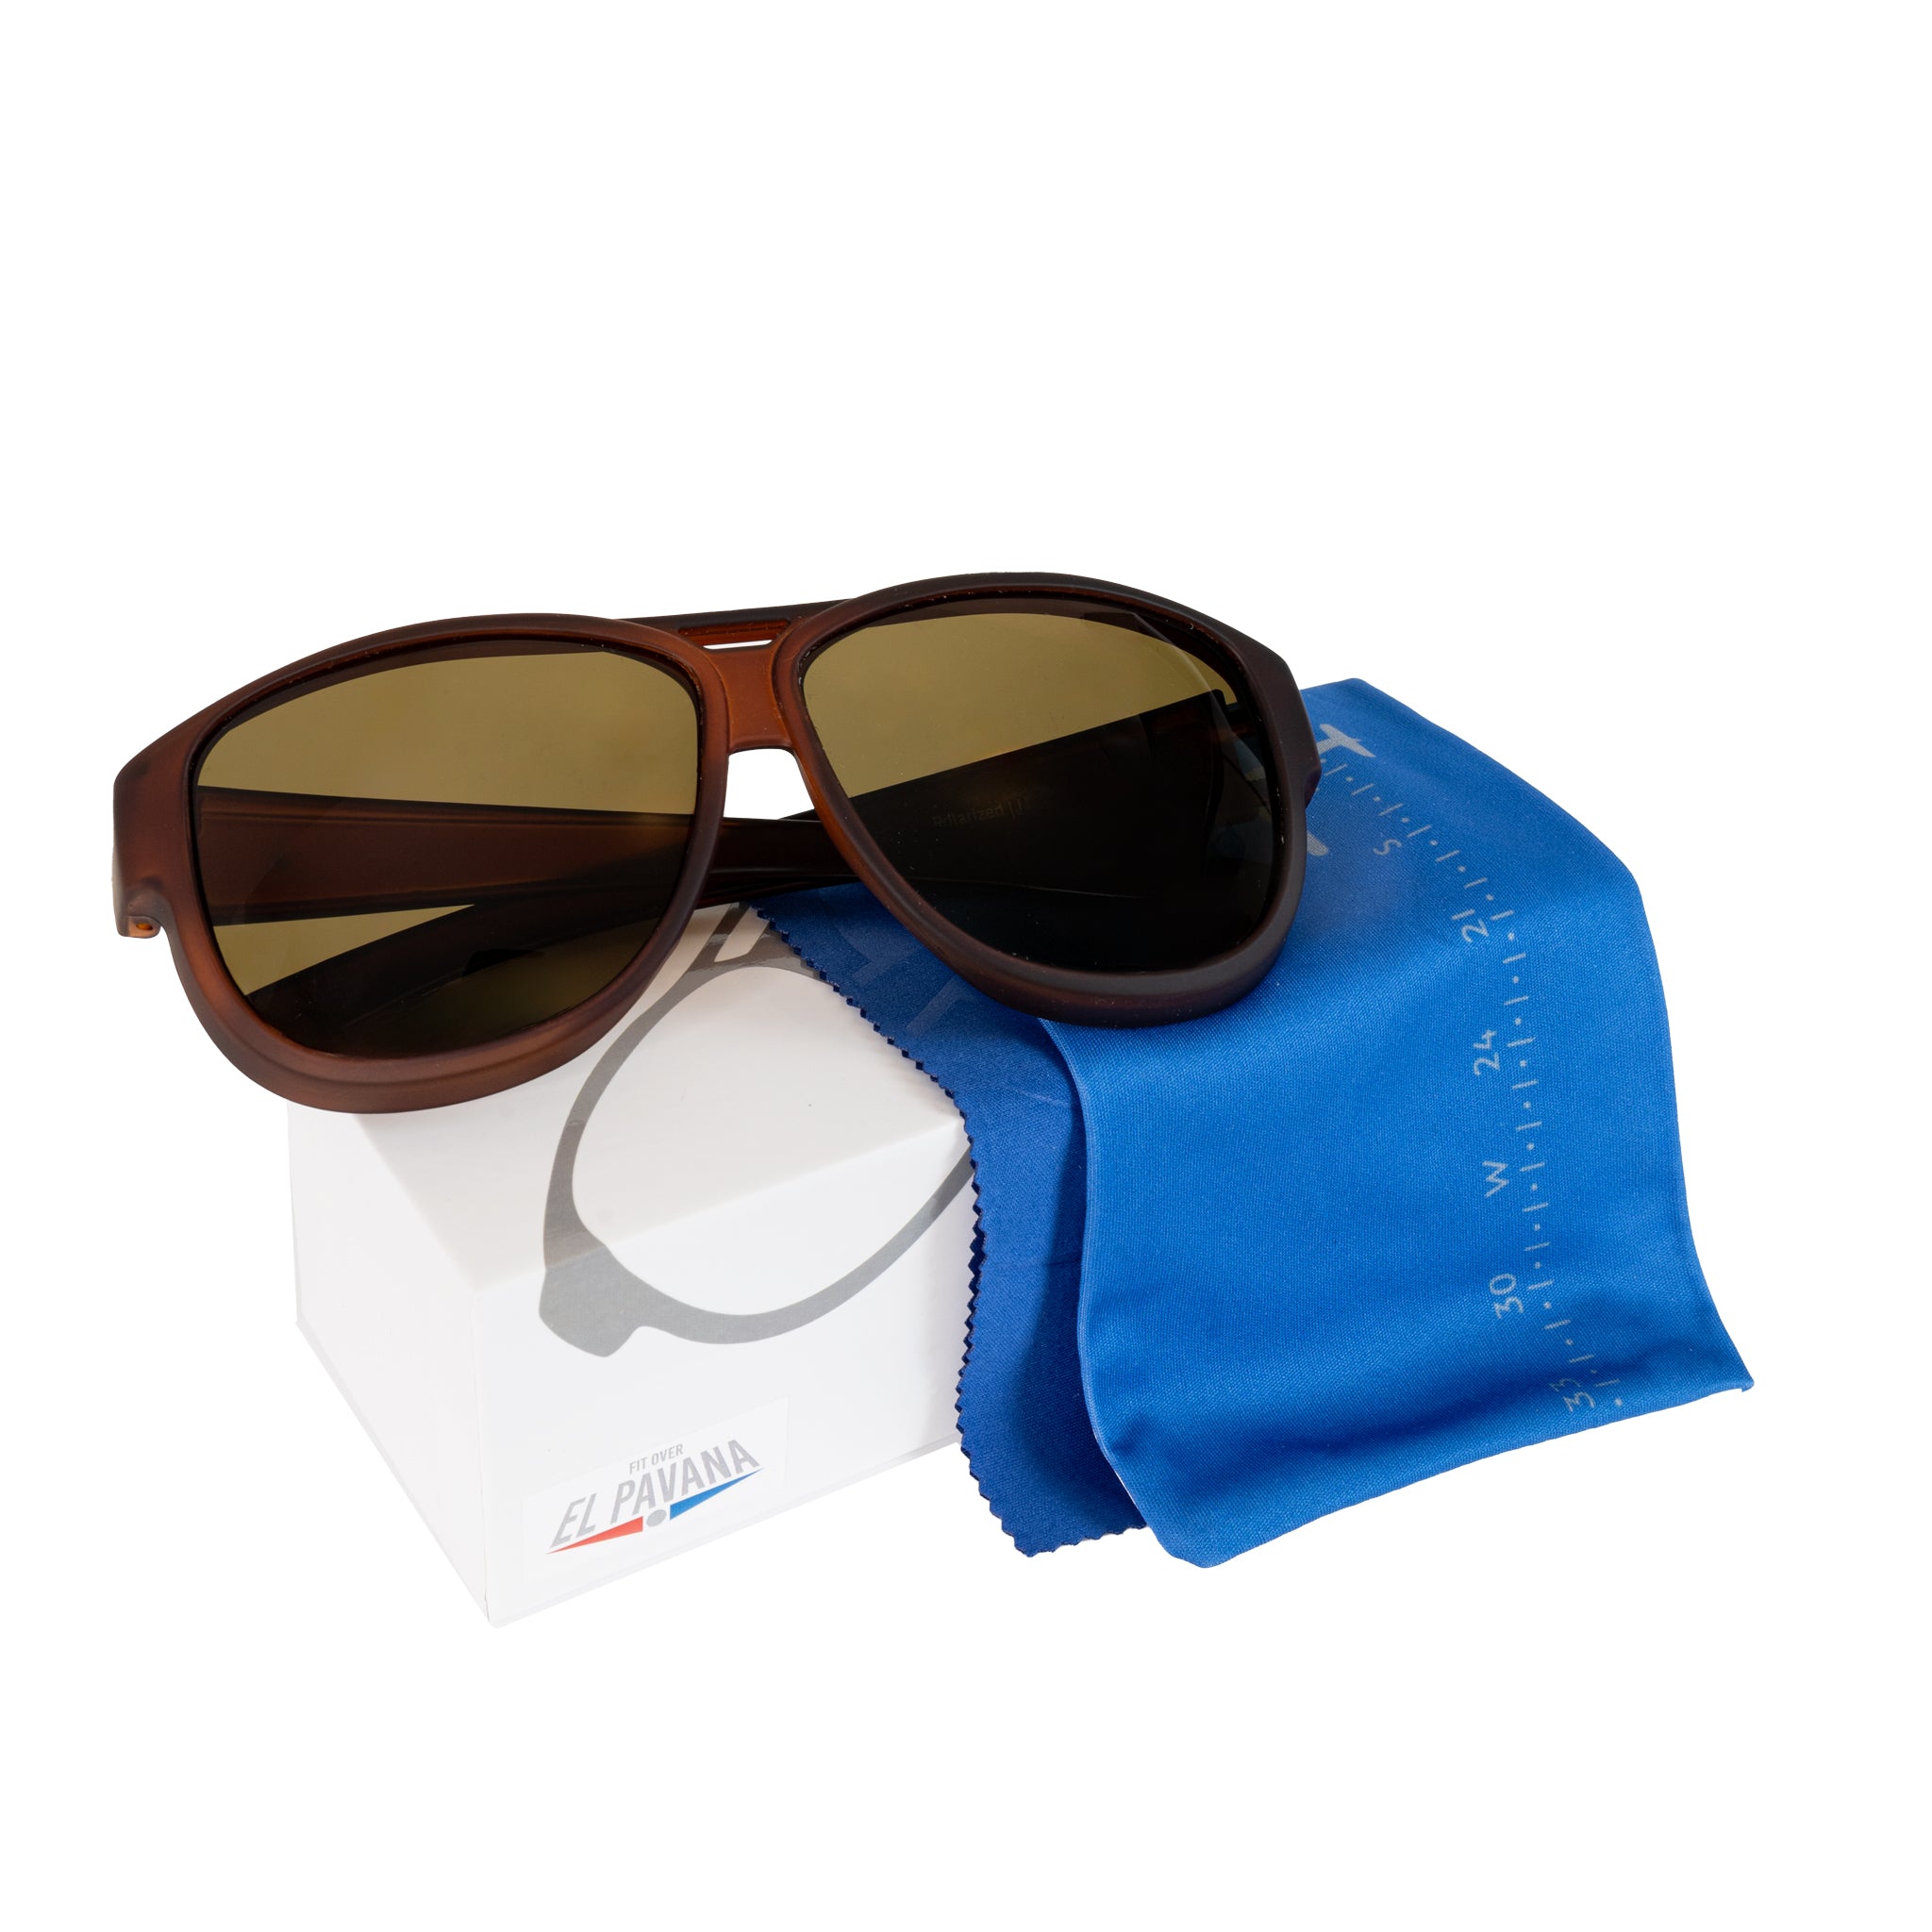 Überzieh-Sonnenbrille El Pavana, für Brillenträger , Braun